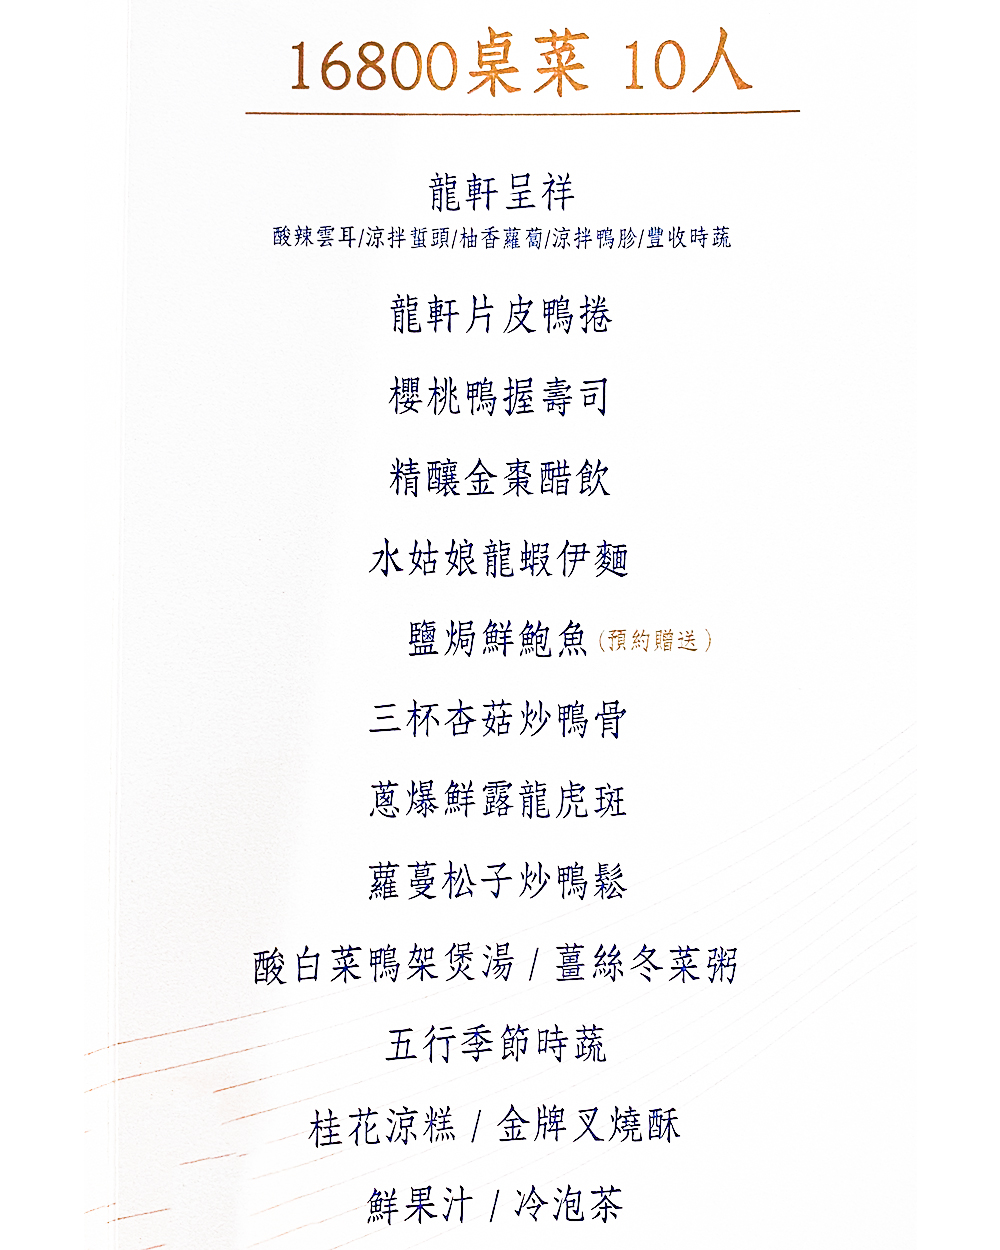 台北中山餐廳「龍軒傳承」16800 元菜單一覽表